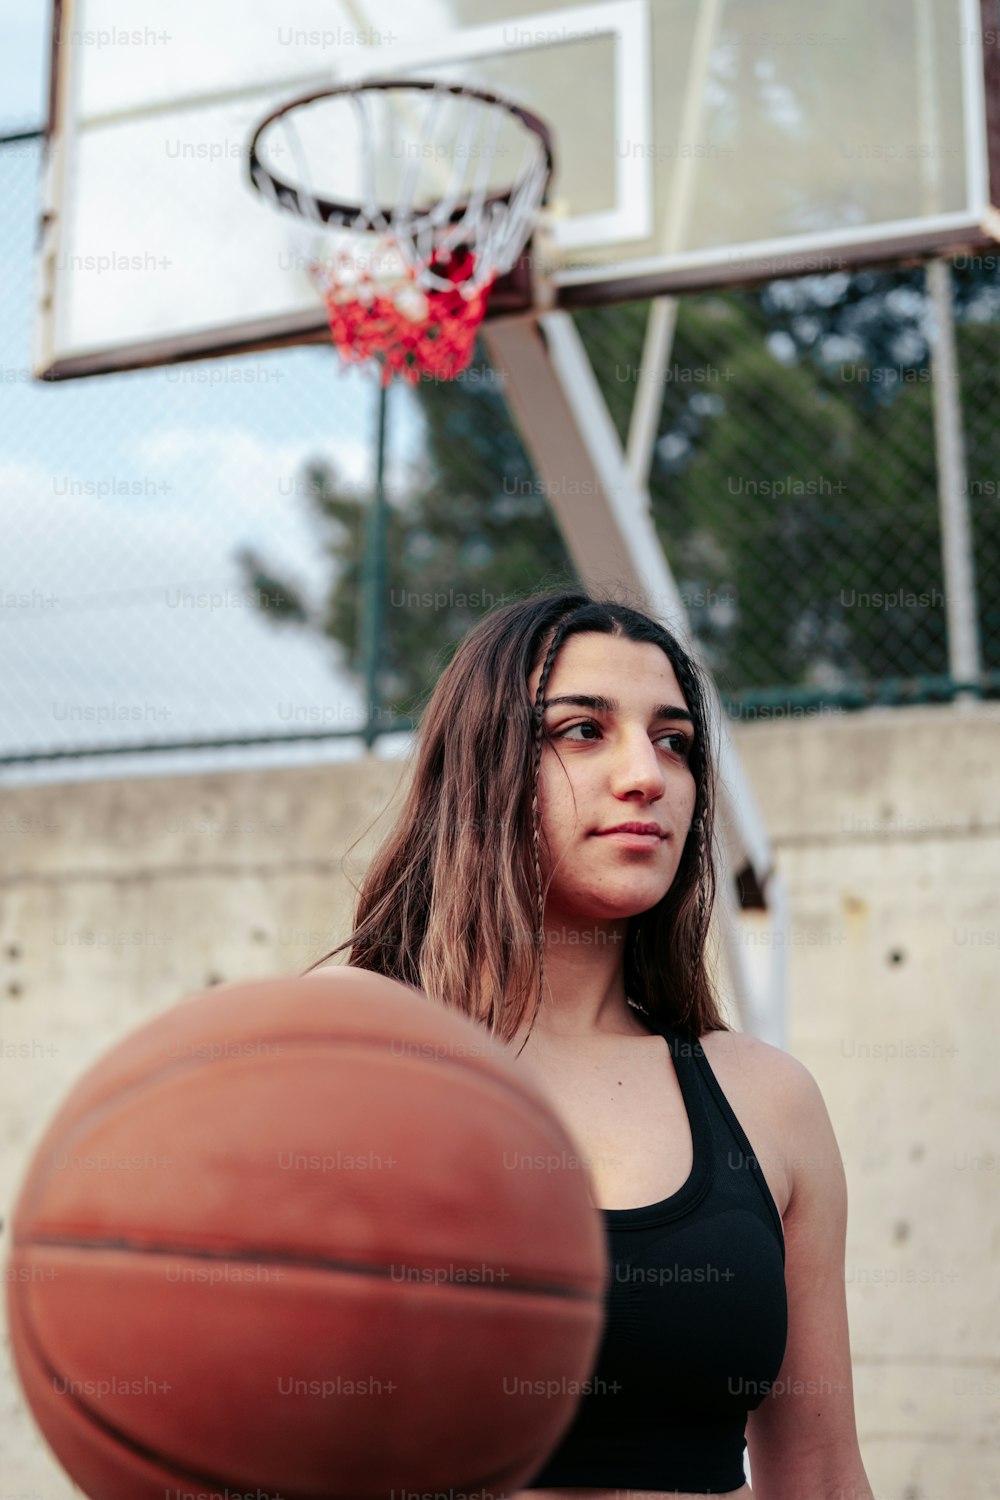 Une femme debout devant un panier de basket-ball